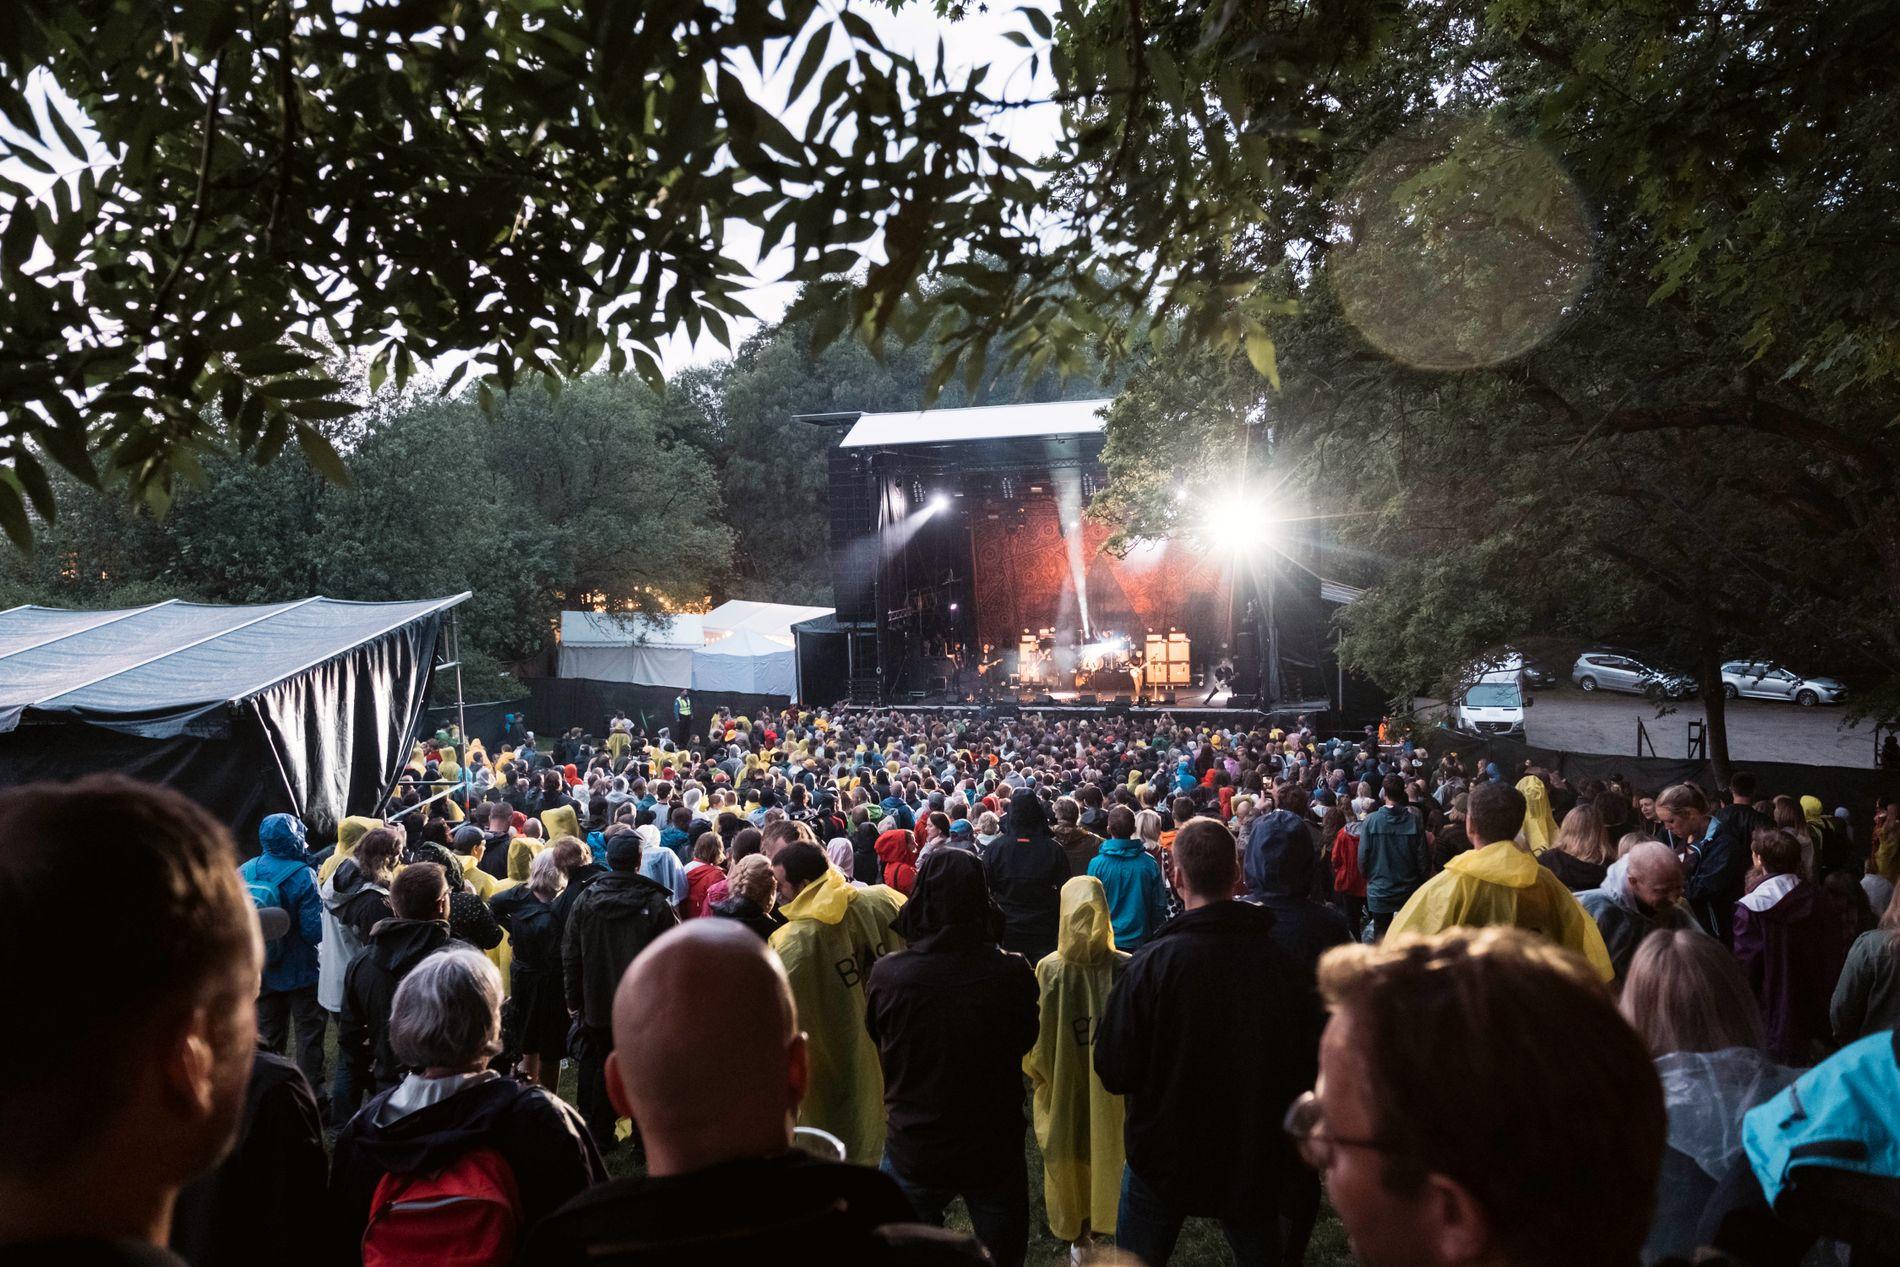 Mablis er blant 14 festivaler i Rogaland som får støtte av Kulturrådet. 